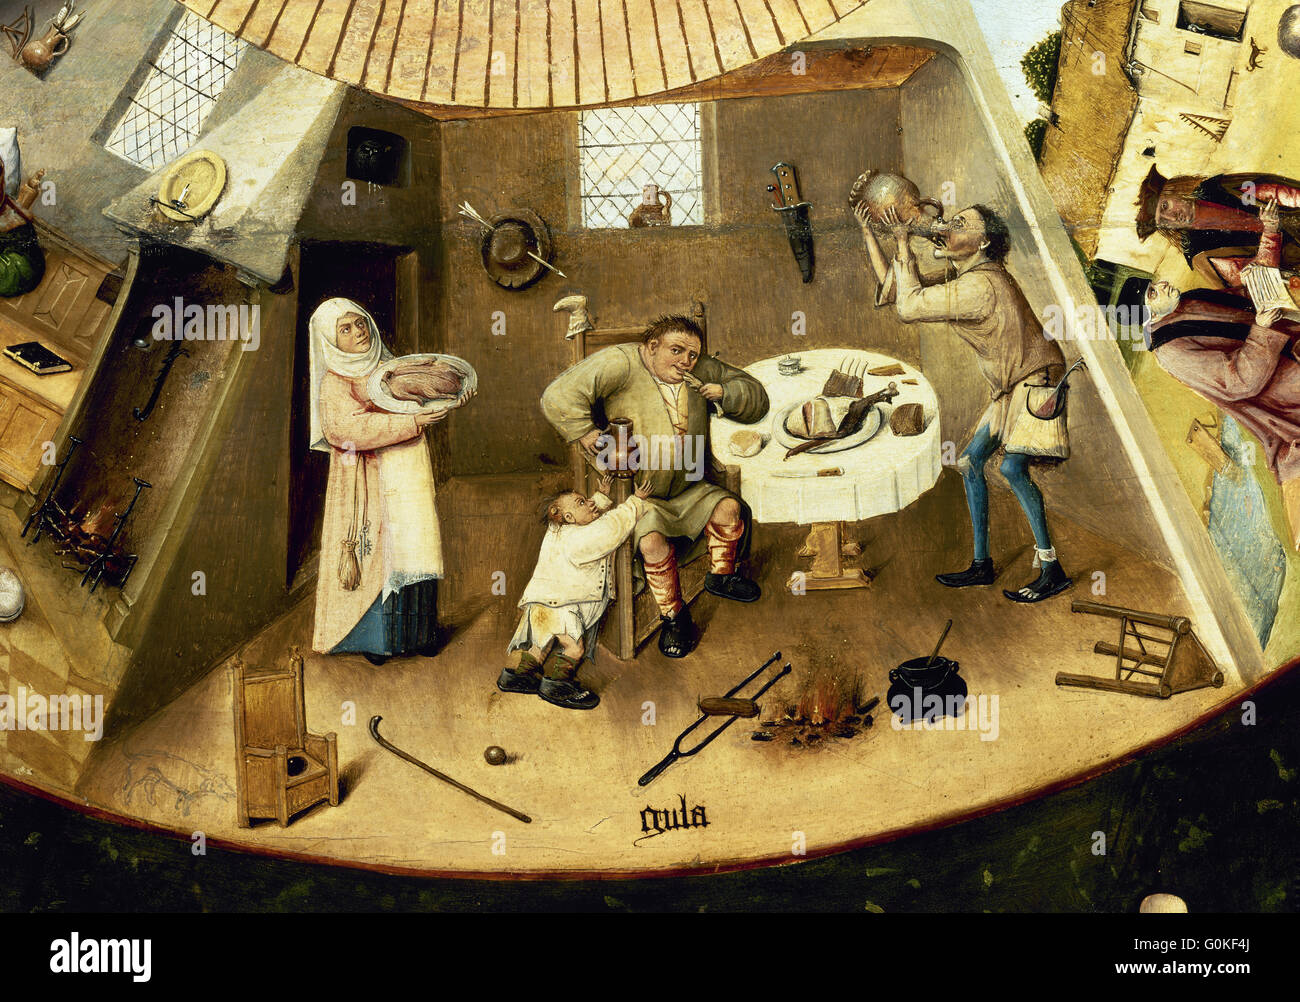 Hieronymus Bosch (c.1450-1516). Pittore olandese. Tabella dei sette peccati capitali. Dettaglio del peccato di gola. Il Museo del Prado. Madrid. Spagna. Foto Stock